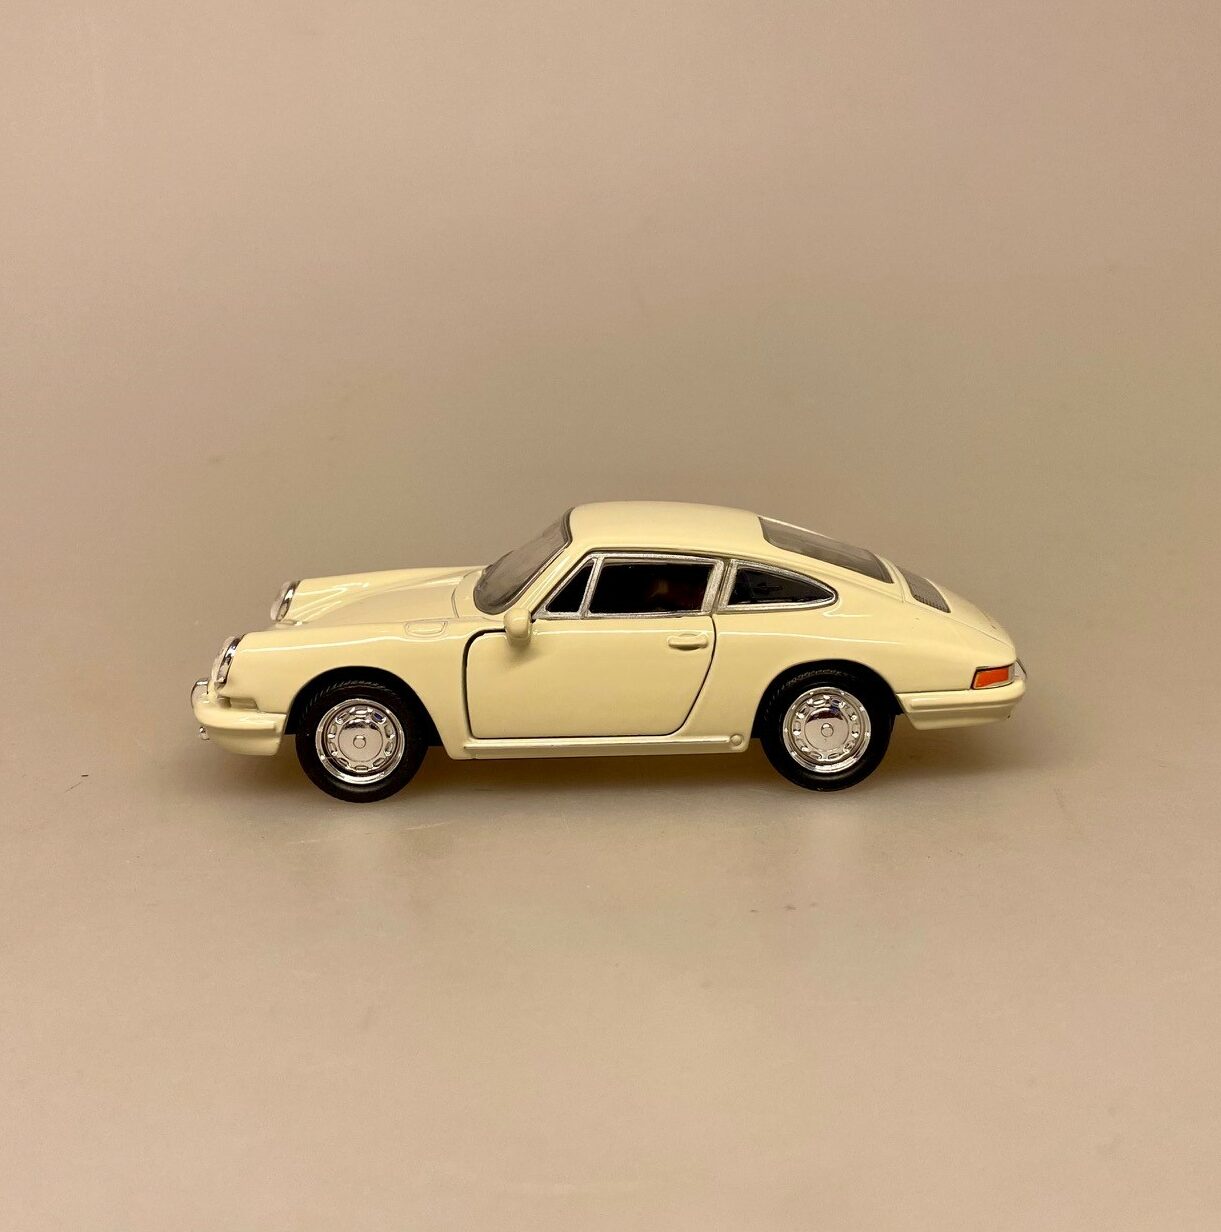 Modelbil Porsche 911 - Creme, cremefarvet, flødefarvet, hvid, olde timer, 1965, modelbil, rød porche, lille bil, legetøj, legetøjsbil, model, biti, ribe, racerbil, kørekort, gave, symbolsk